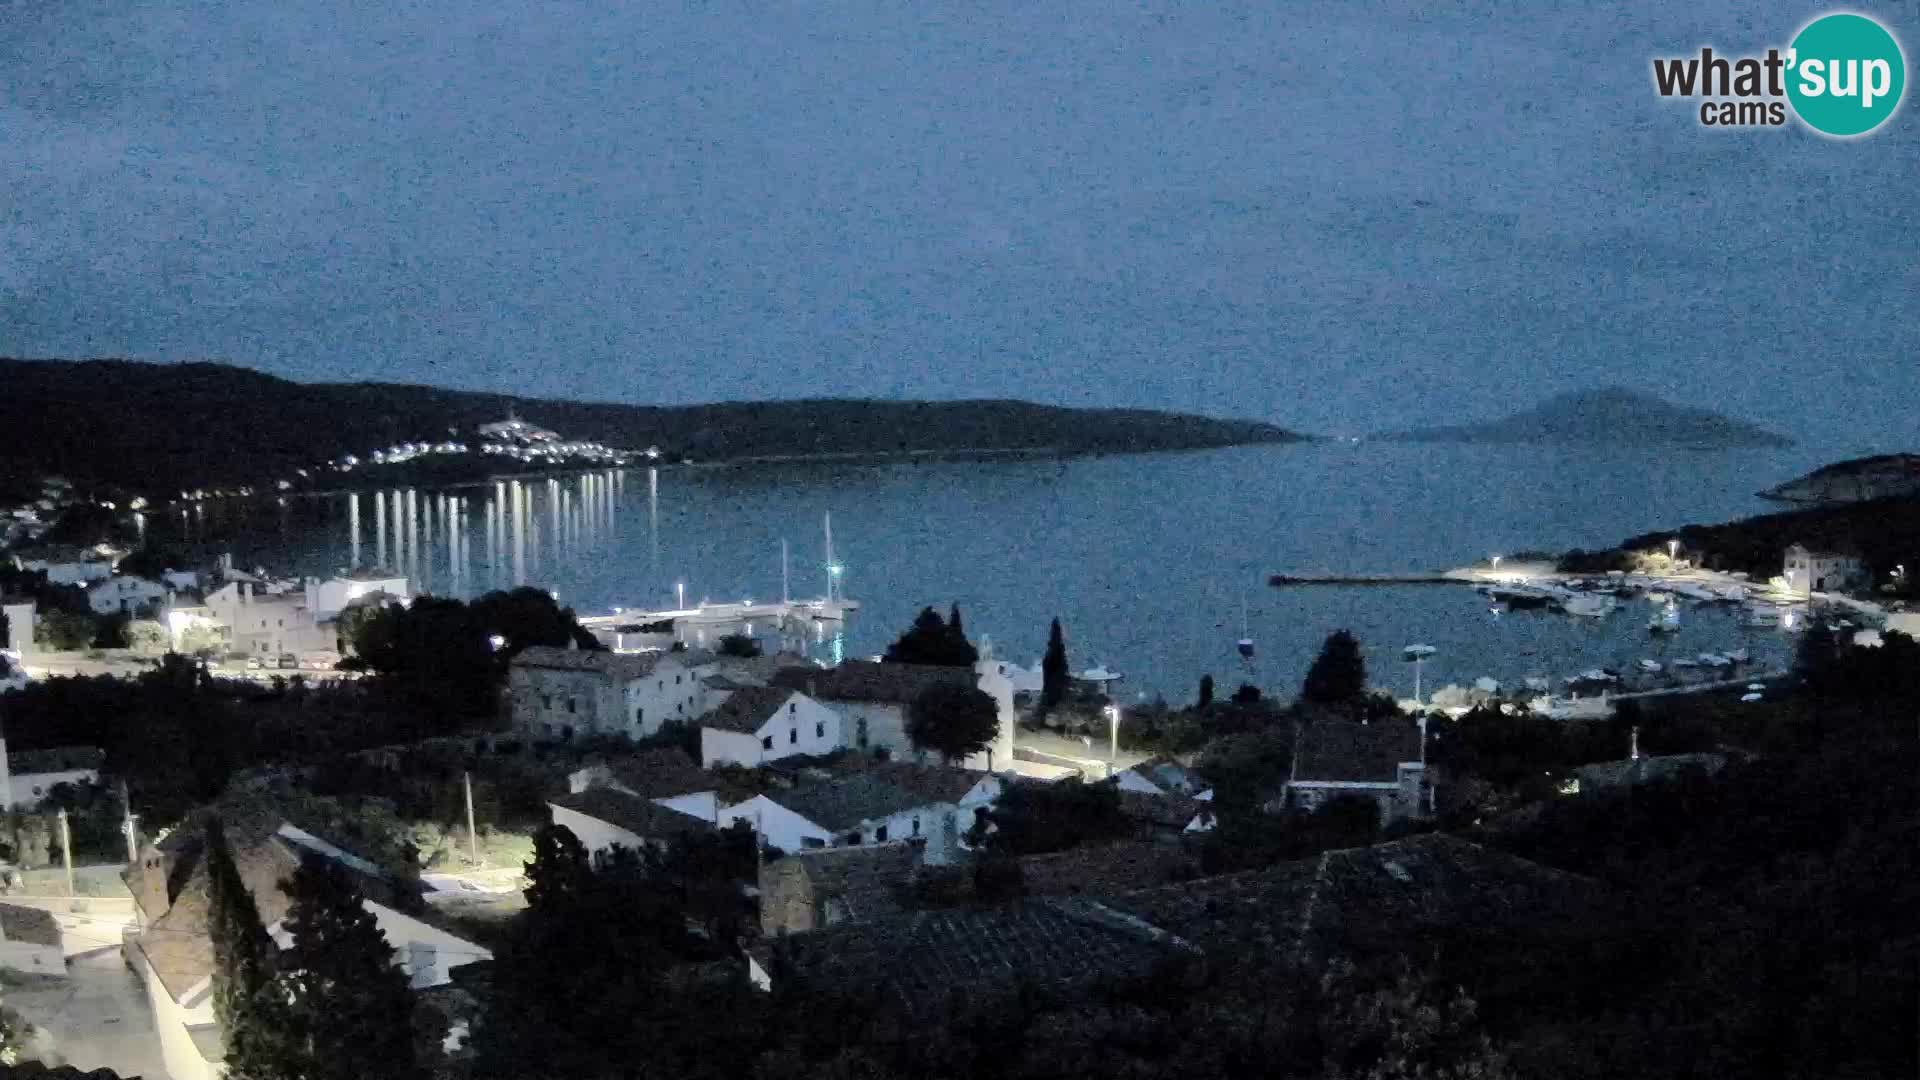 Live webcam Martinšćica – Cres island – Croatia